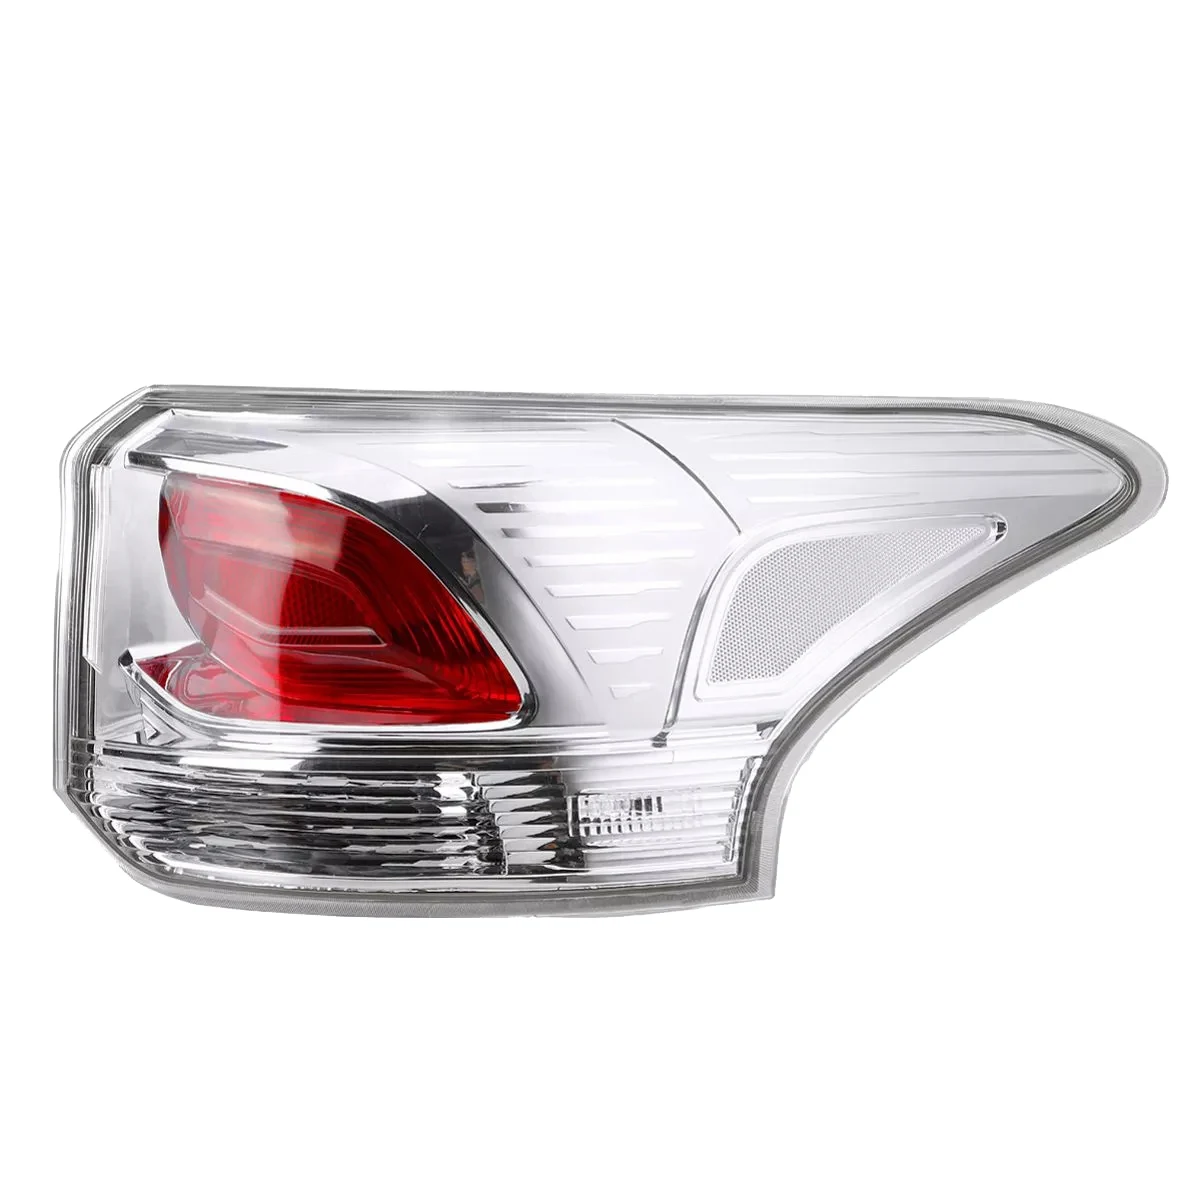 

Автомобильная задняя лампа, задний тормоз, Фонарь указателя поворота для Mitsubishi Outlander 2013 2014 2015 8330A787 8330A788, правая